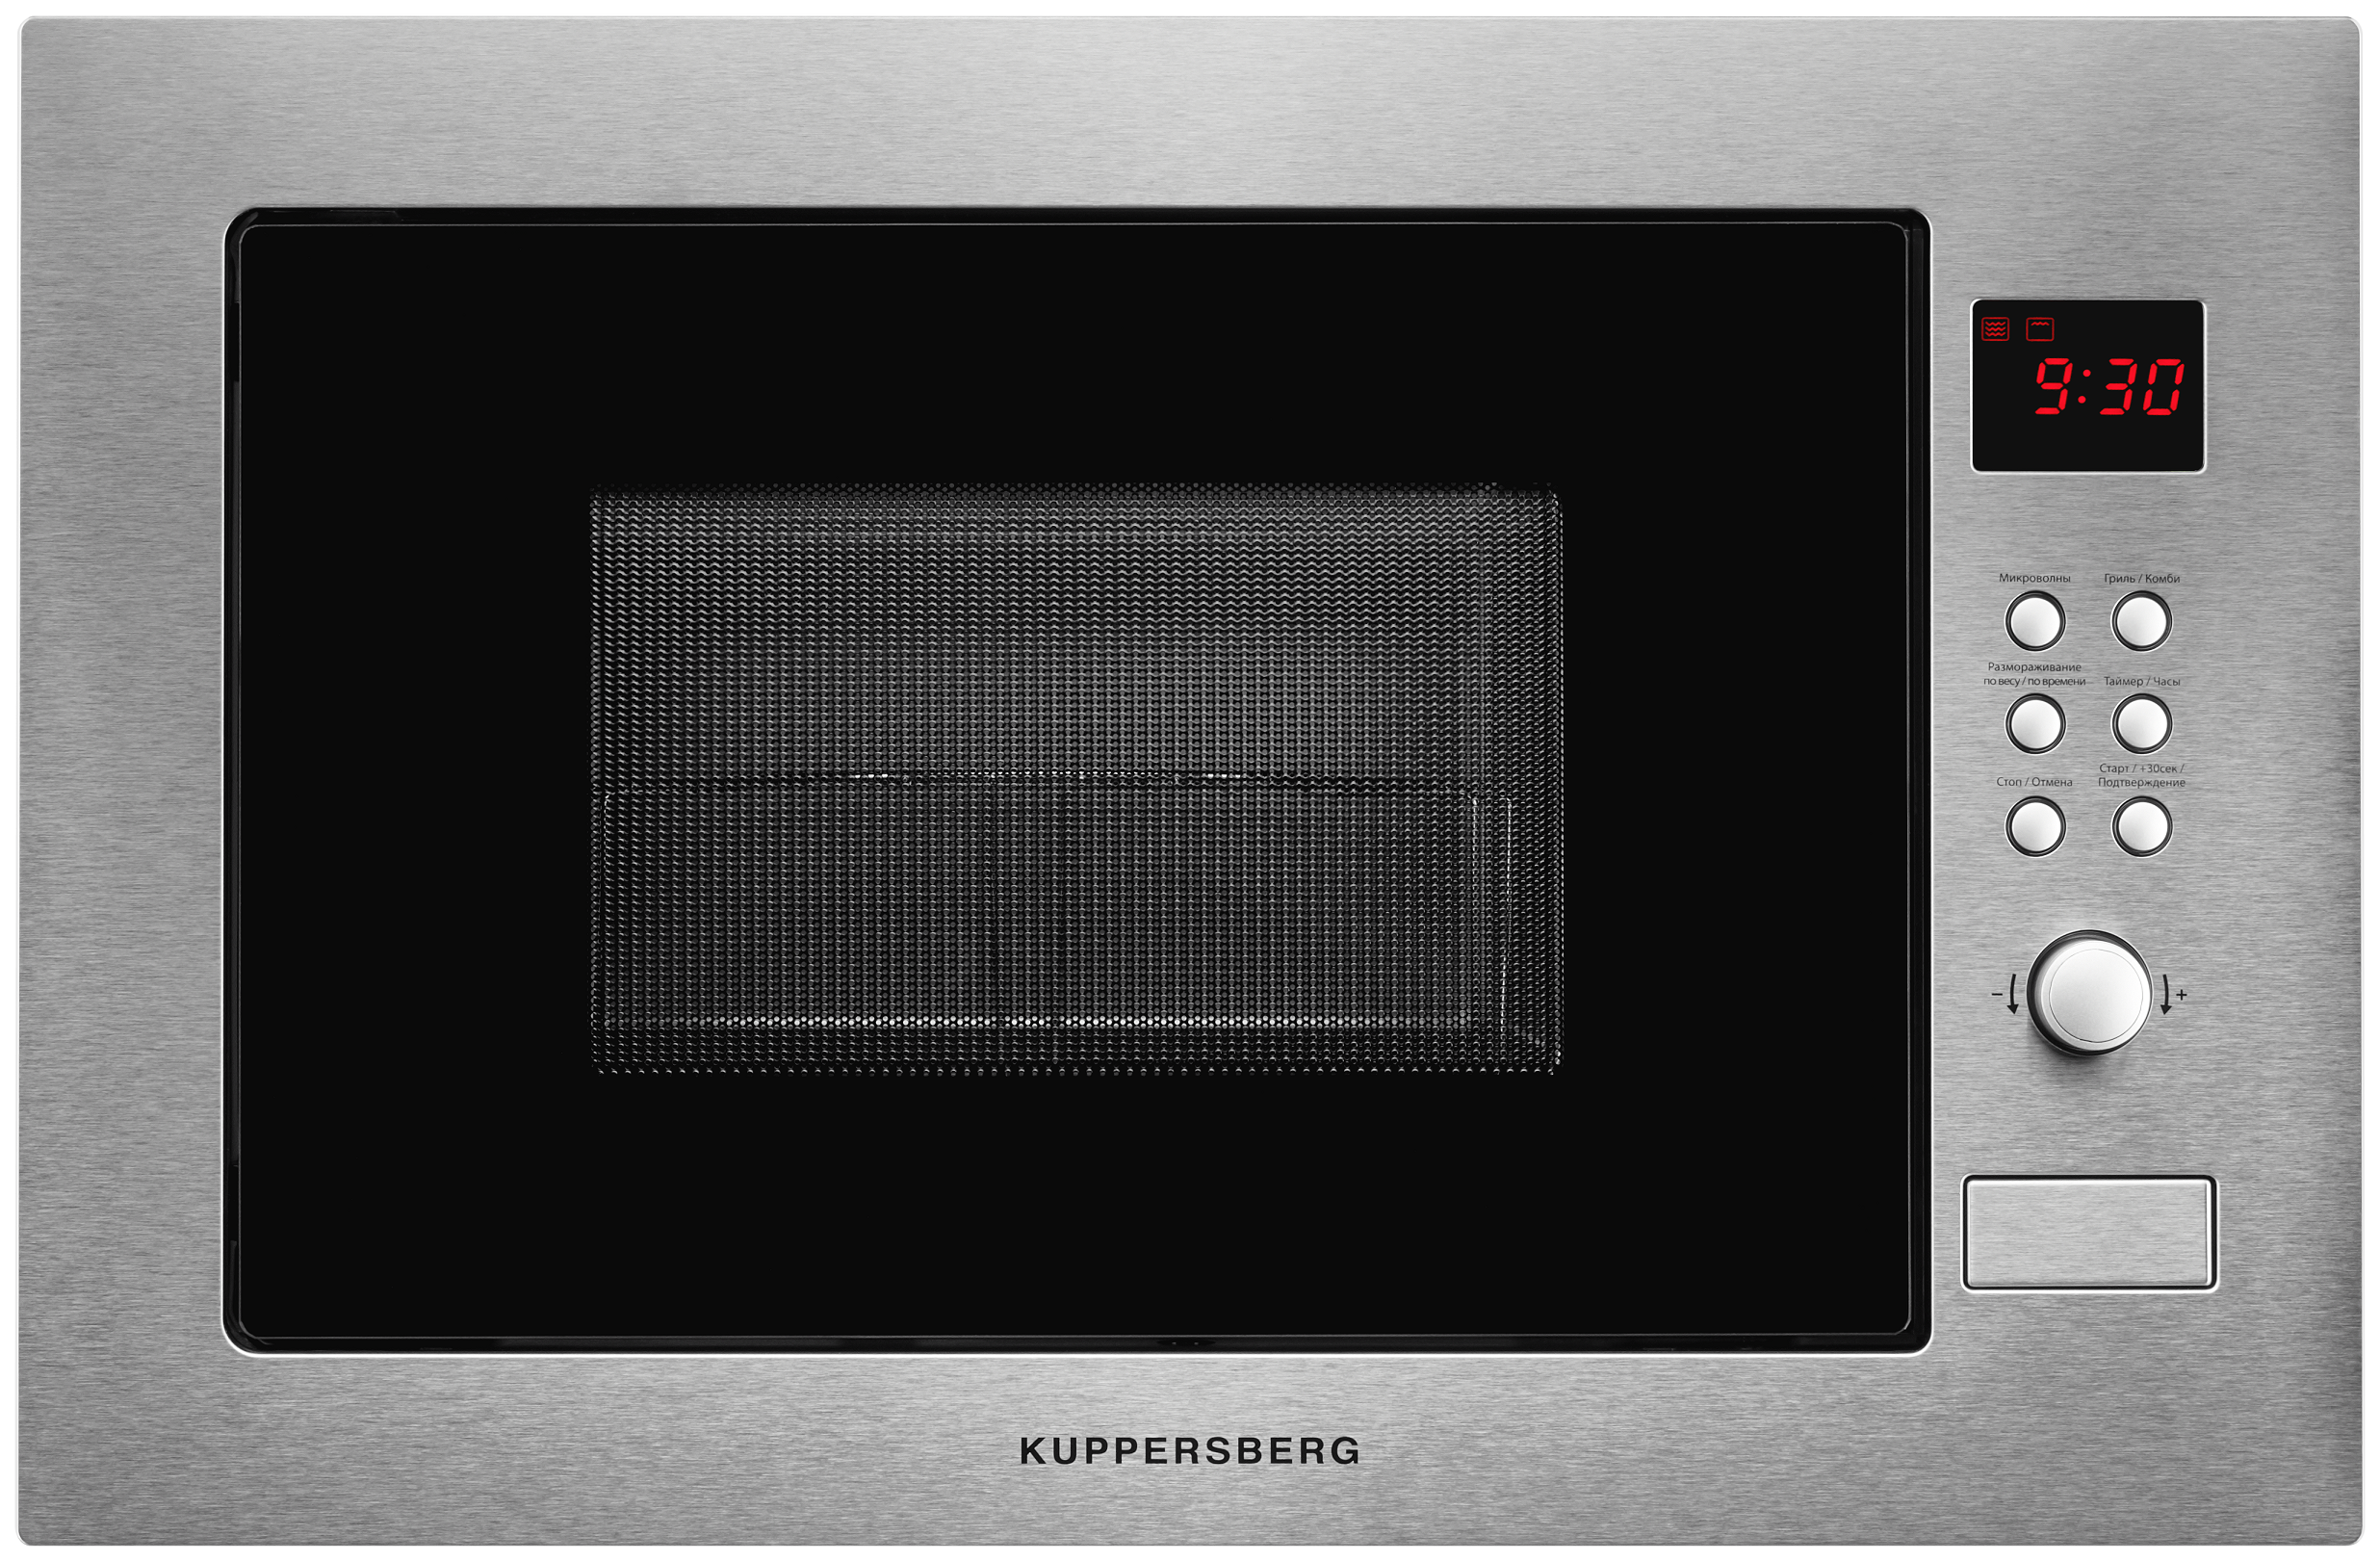 Встраиваемая микроволновая печь KUPPERSBERG HMW 635 серебристая встраиваемая микроволновая печь thomson bmo10 m2101 серебристая черная